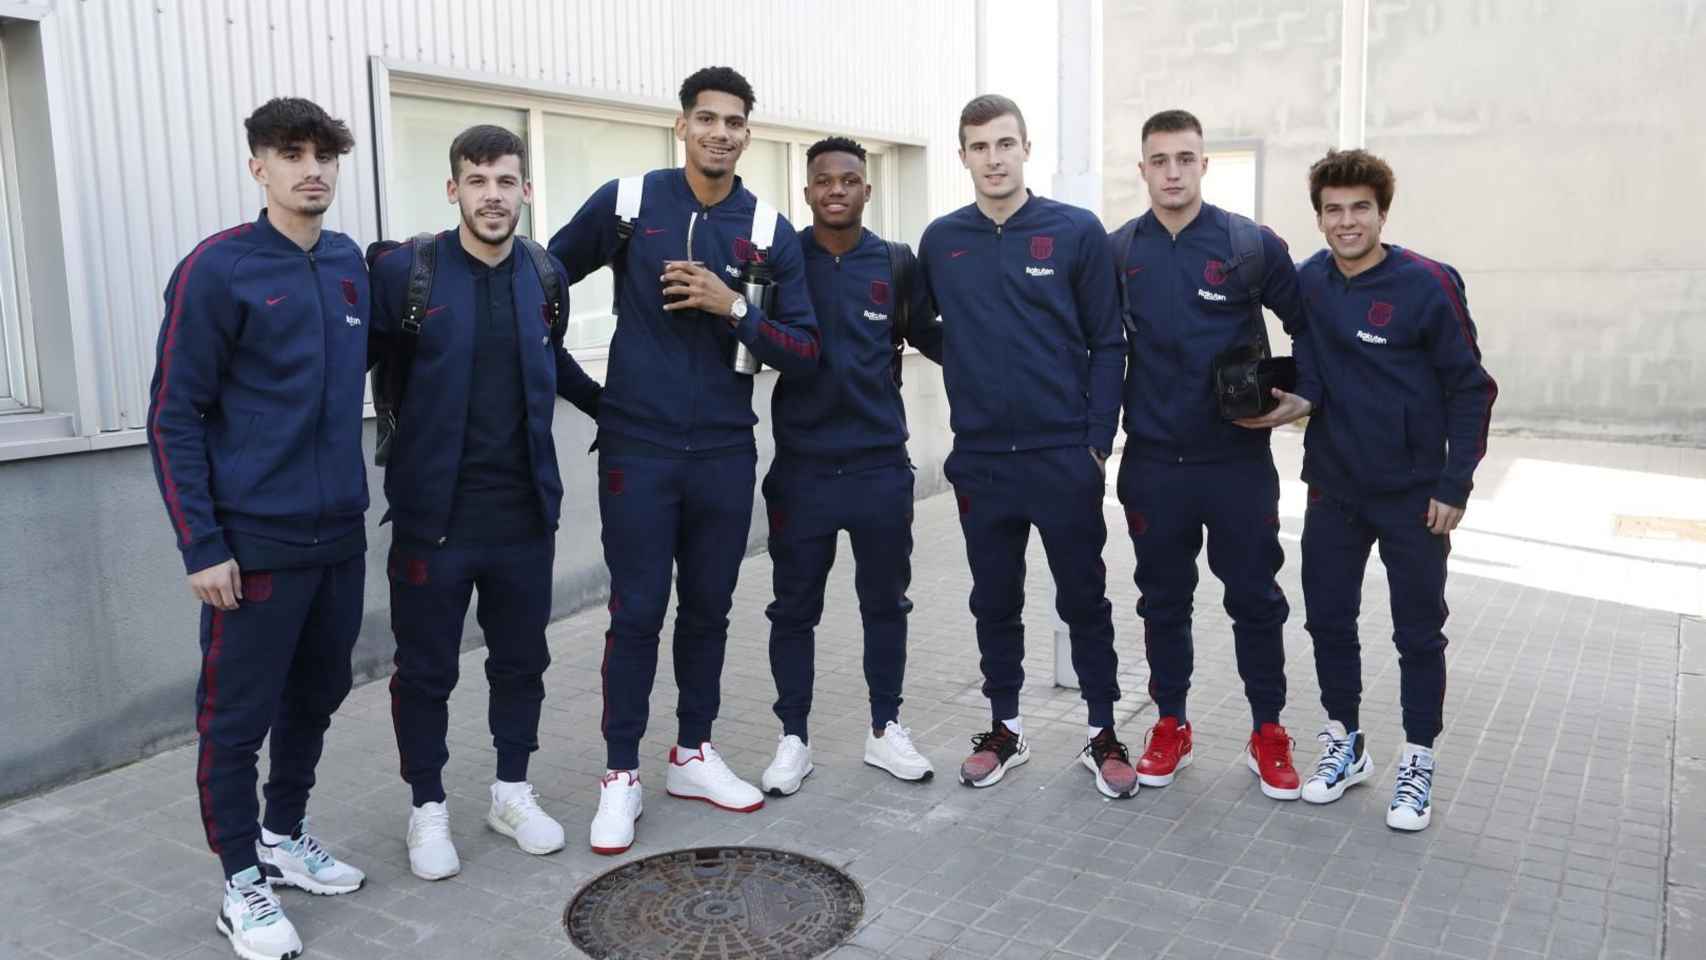 Los jugadores del Barça B y juvenil A convocados para la Supercopa / FC Barcelona